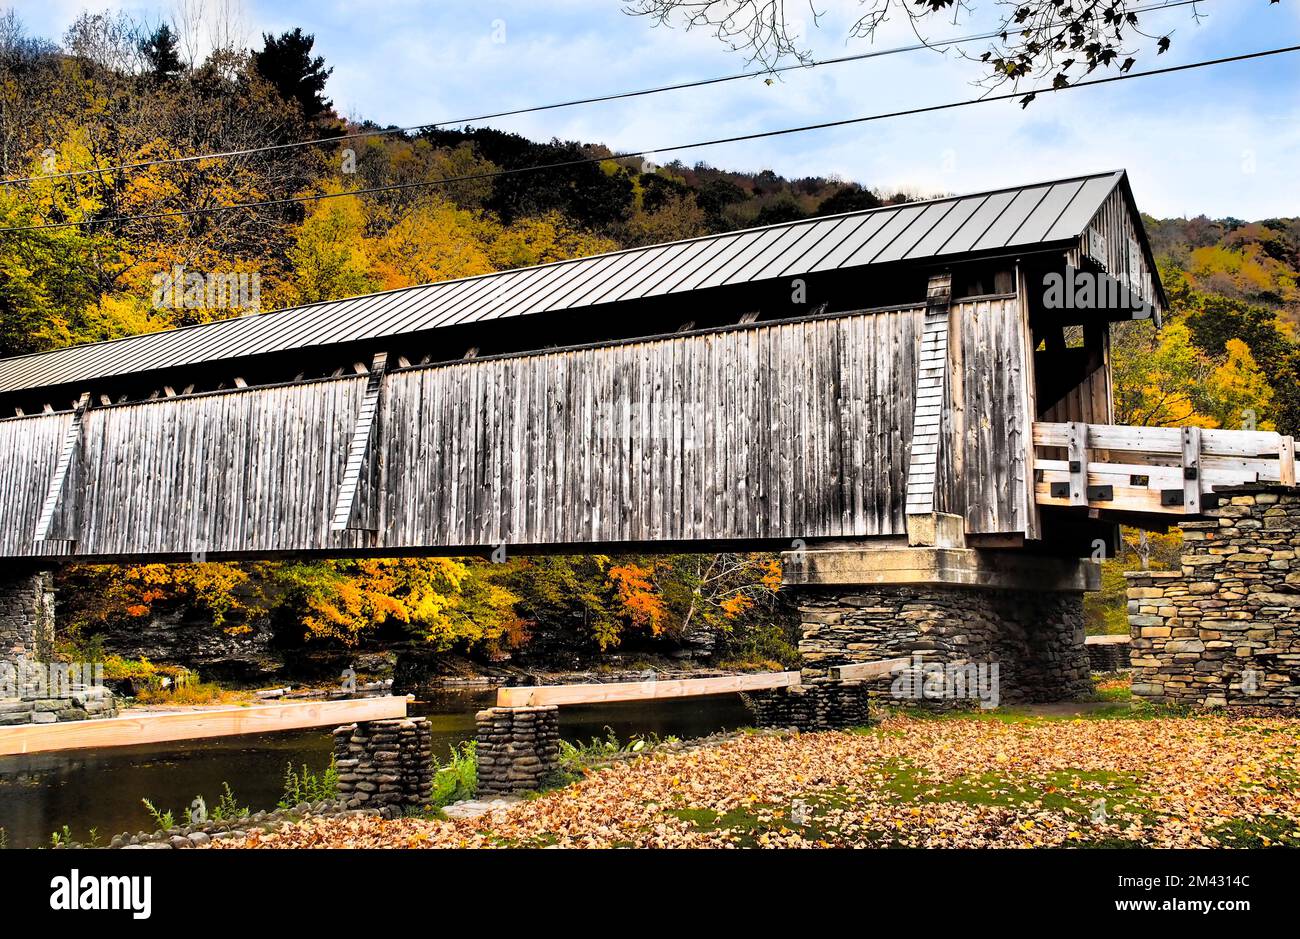 Pont couvert rural au-dessus d'une rivière calme, couleurs vives des feuilles d'automne dans les collines boisées et ciel bleu. Avec filtres pour un effet carte postale rétro. Banque D'Images